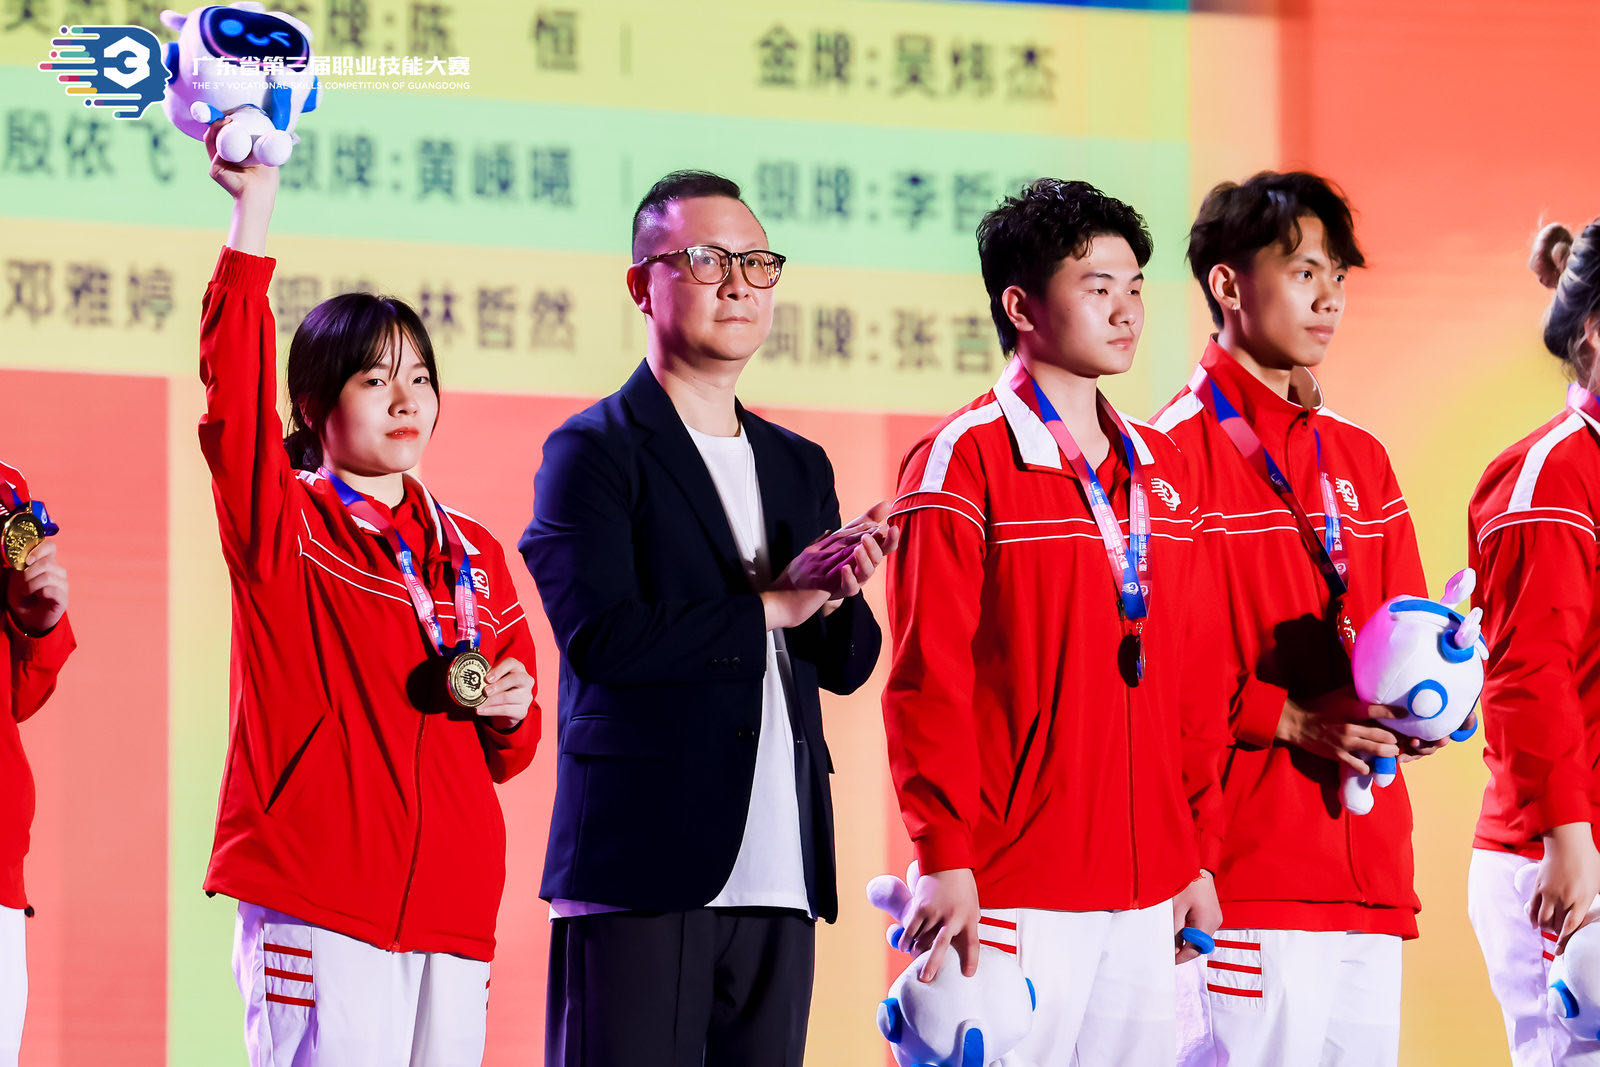 美髮項目選手郭彥熙(右一)台上獲獎